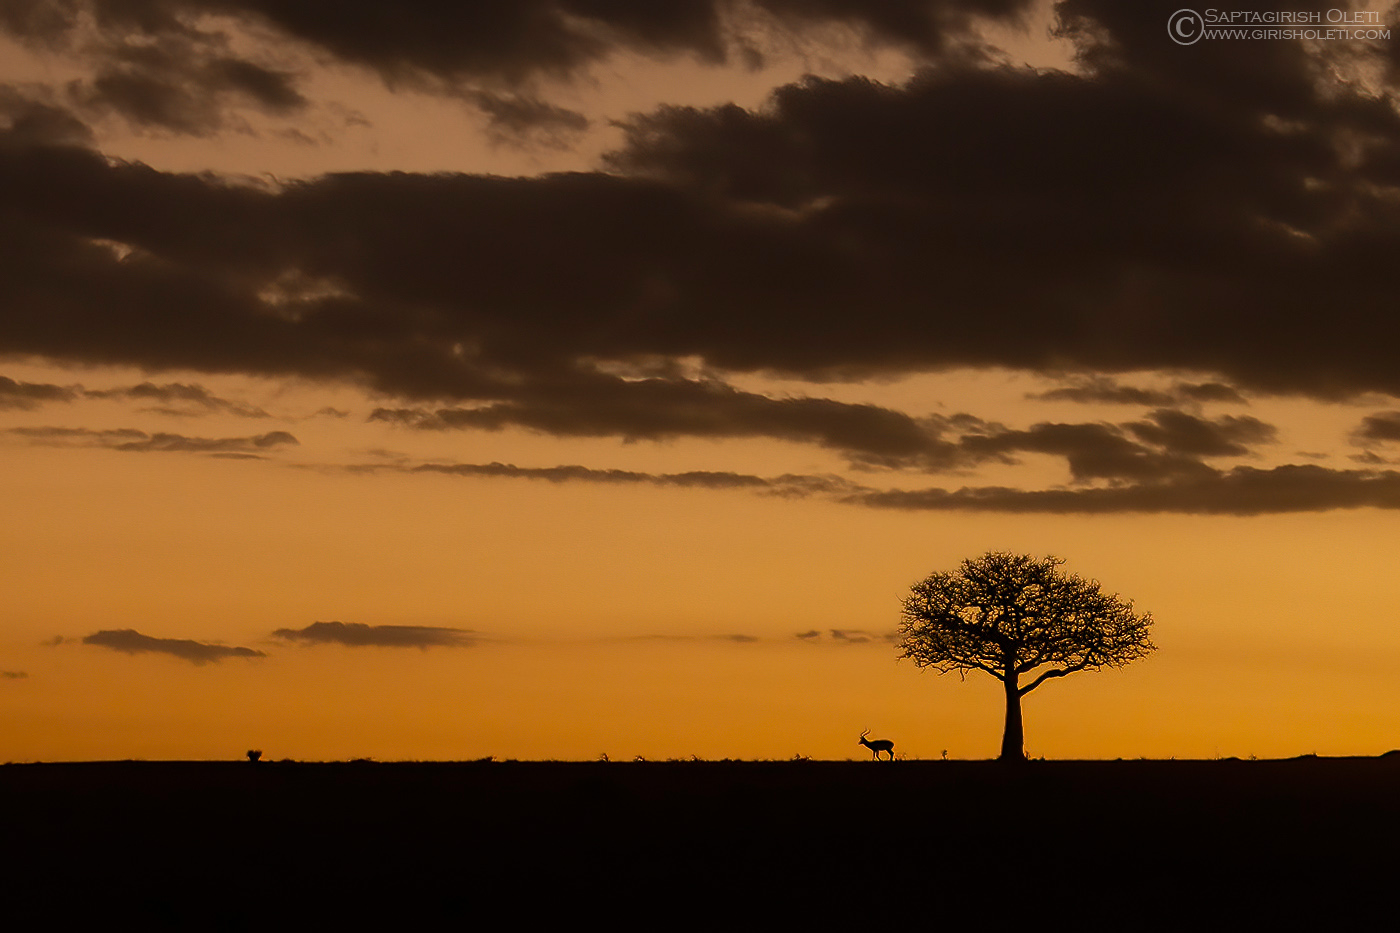 Topi photographed at Masai Mara, Kenya